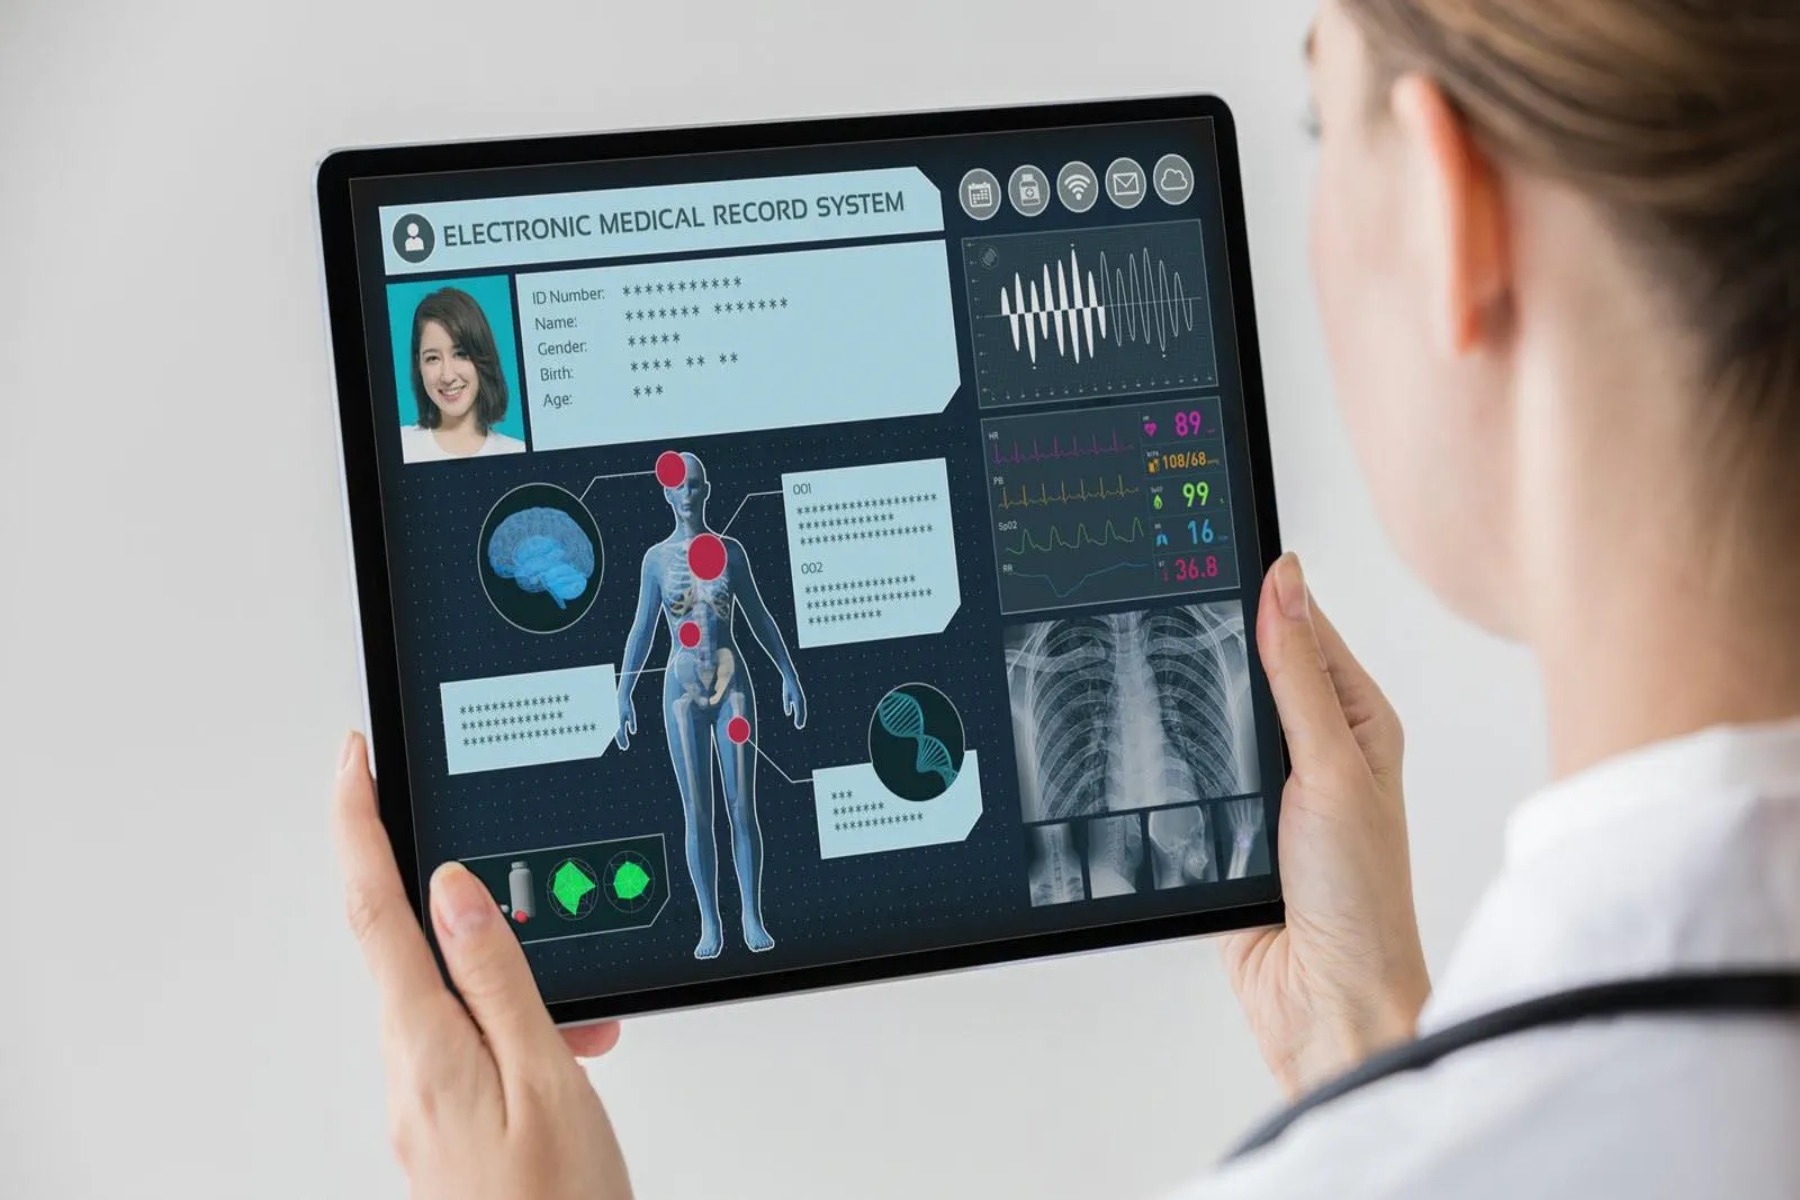 Ψηφιακή υγεία: Πώς νιώθουν πραγματικά οι άνθρωποι για τα ηλεκτρονικά αρχεία υγείας;